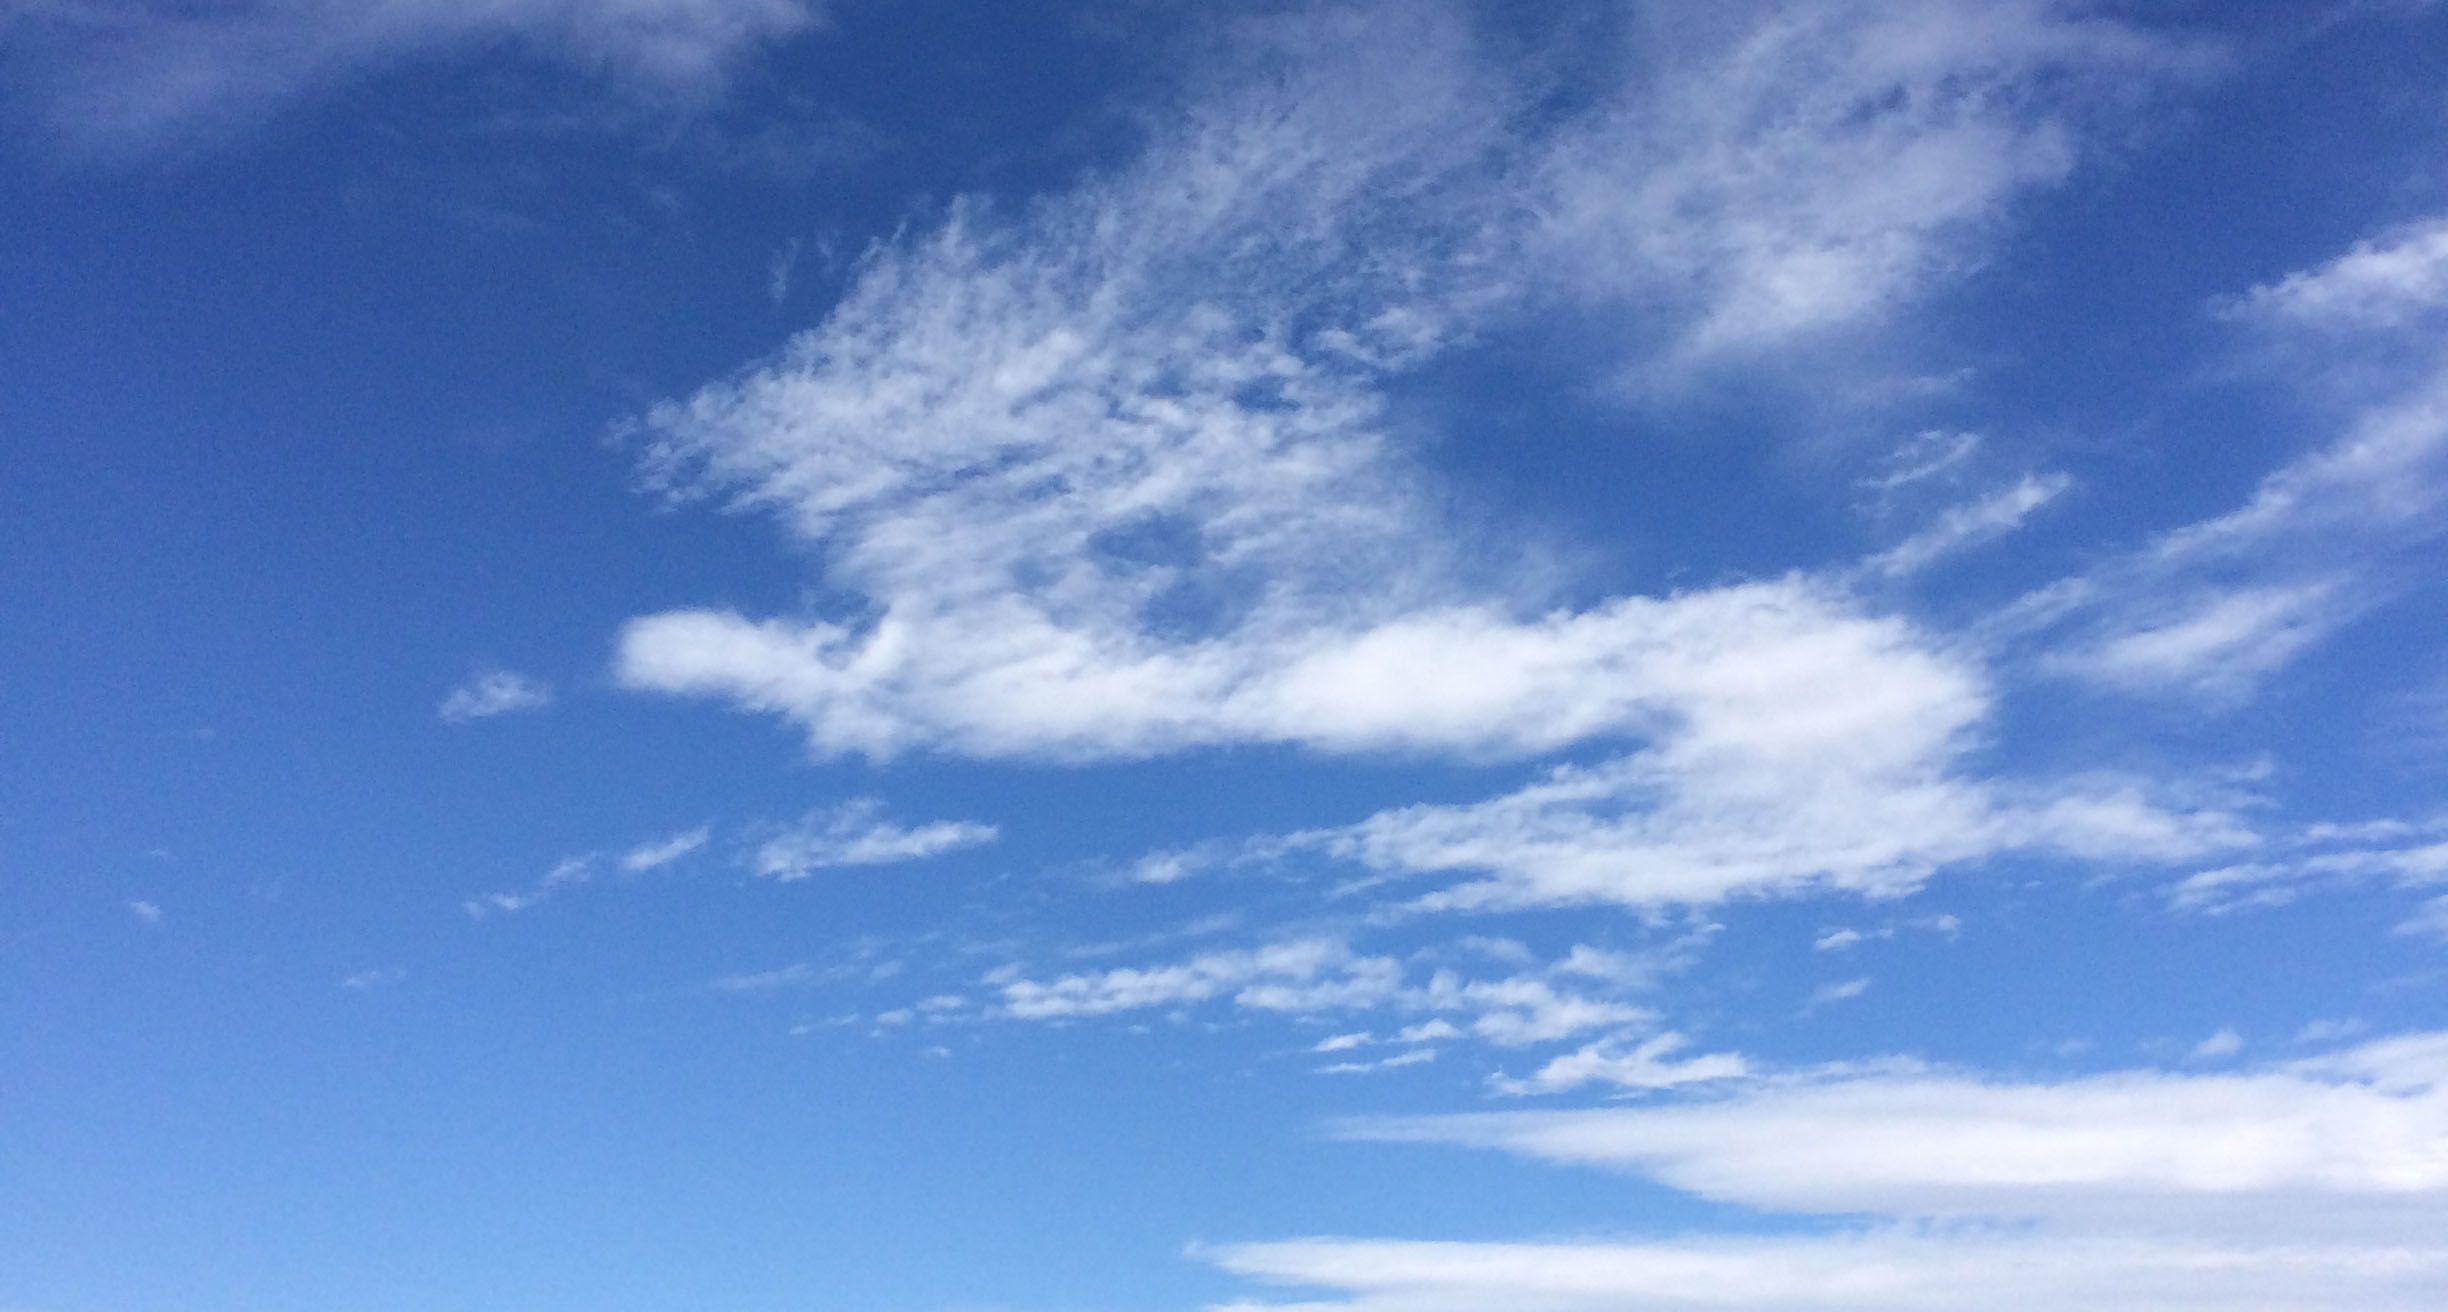 浮かぶ雲がまるでドラゴンのような形に見える。